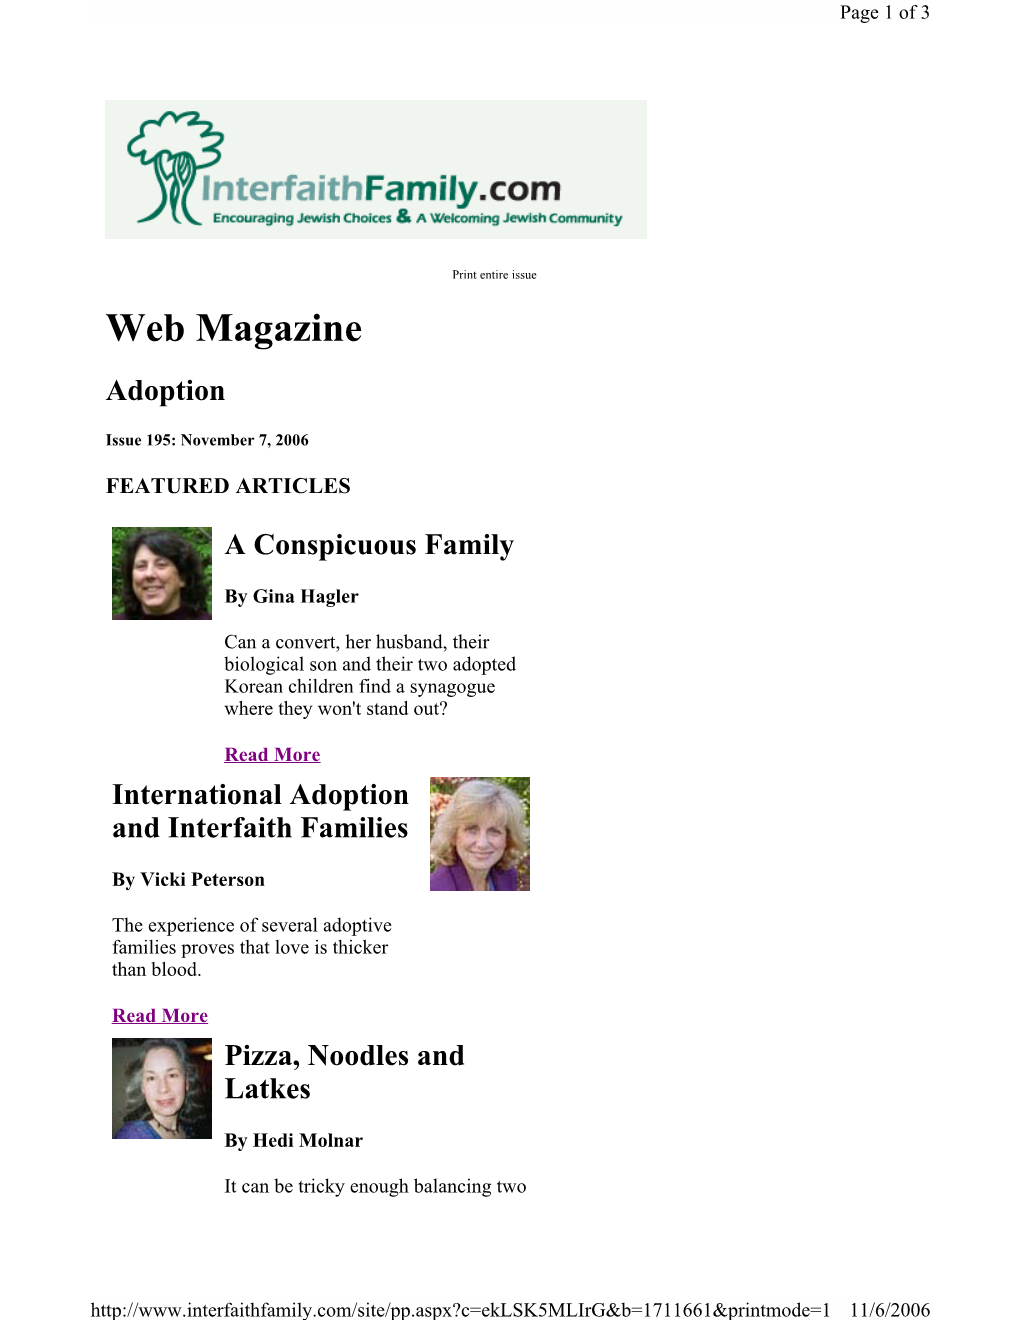 Web Magazine Adoption